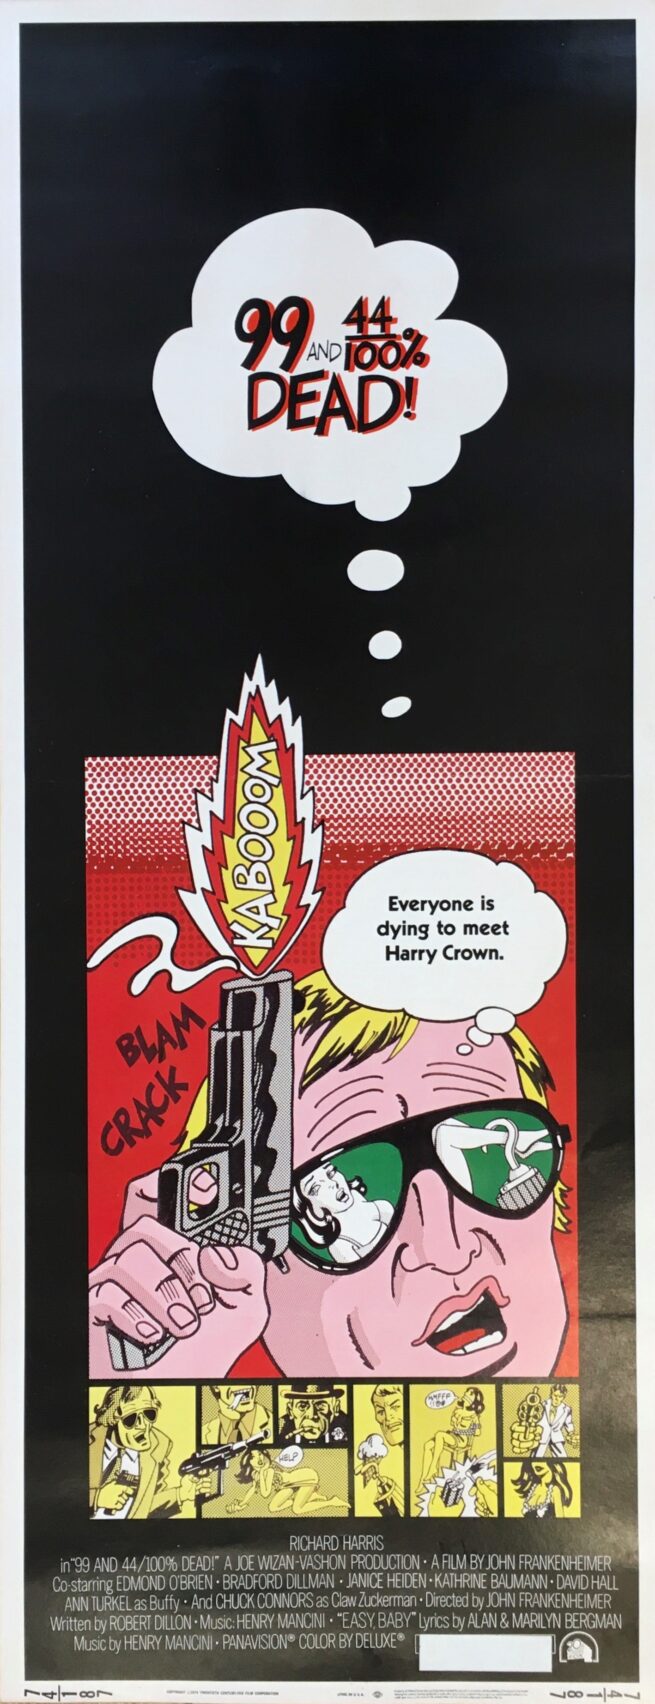 original vintage cinema movie poster with pop art design by Bill Gold, inspired by Roy Lichtenstein